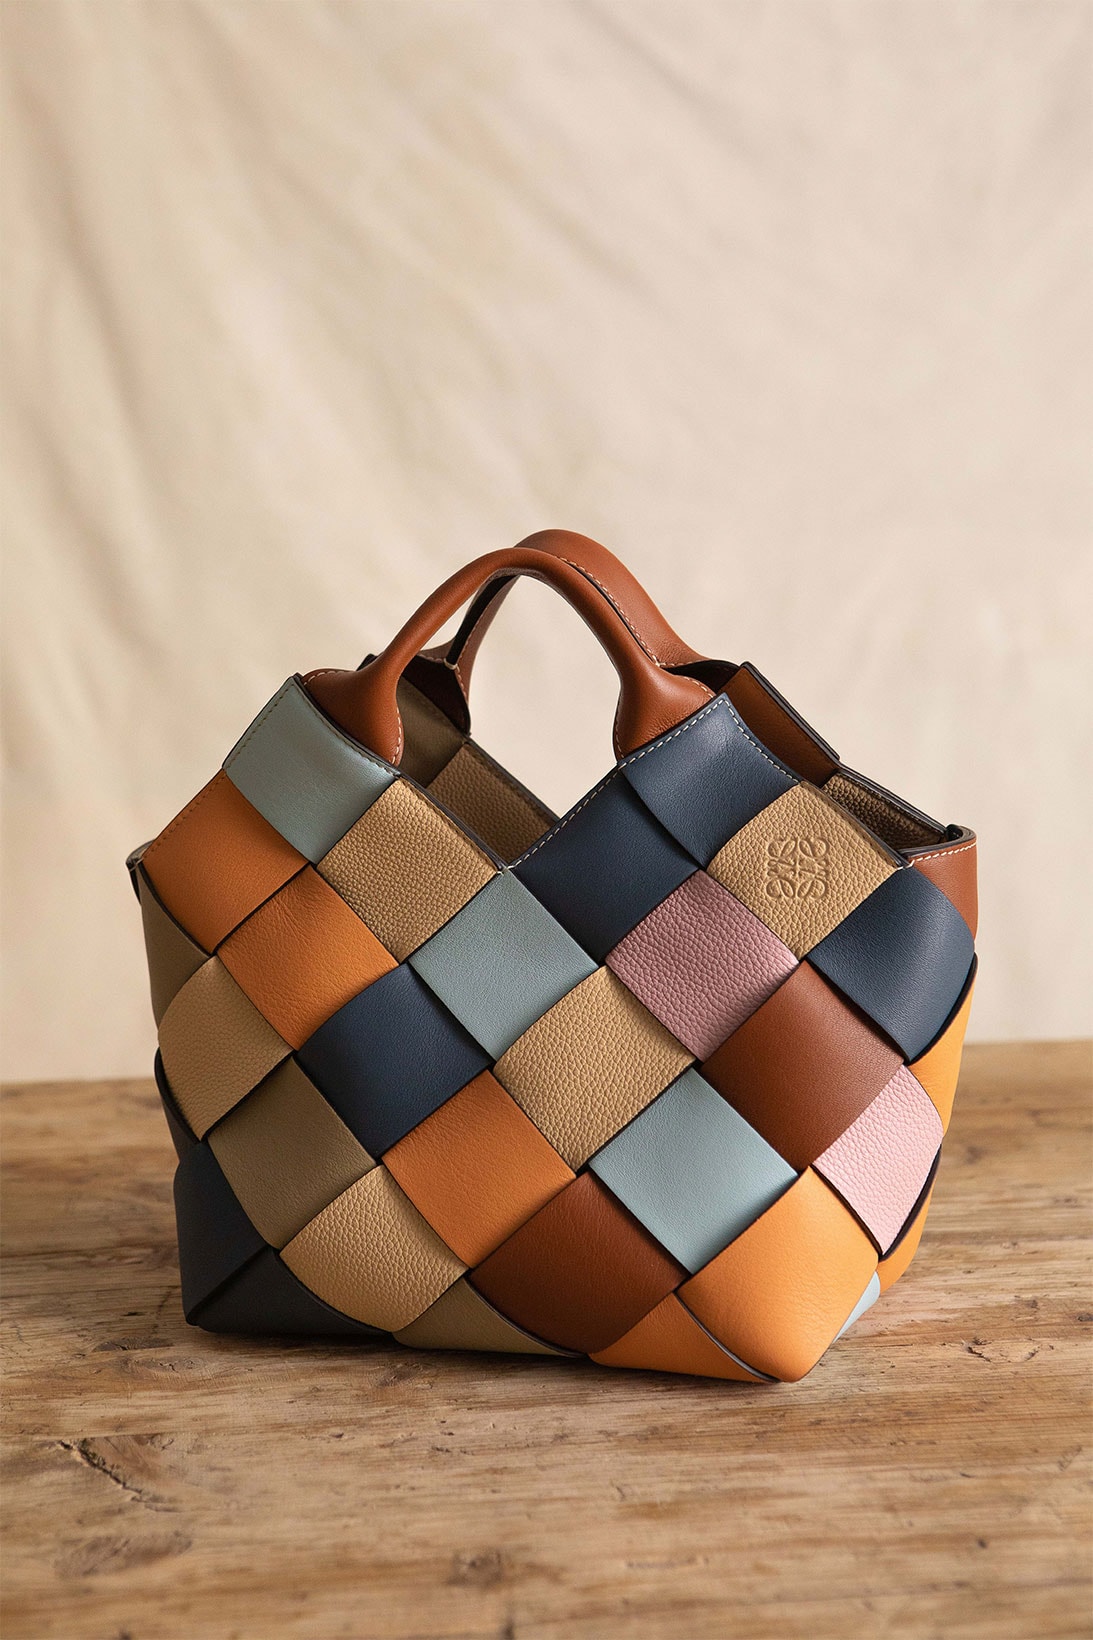 loewe the surplus project woven basket handbags sustainable orange blue beige brown